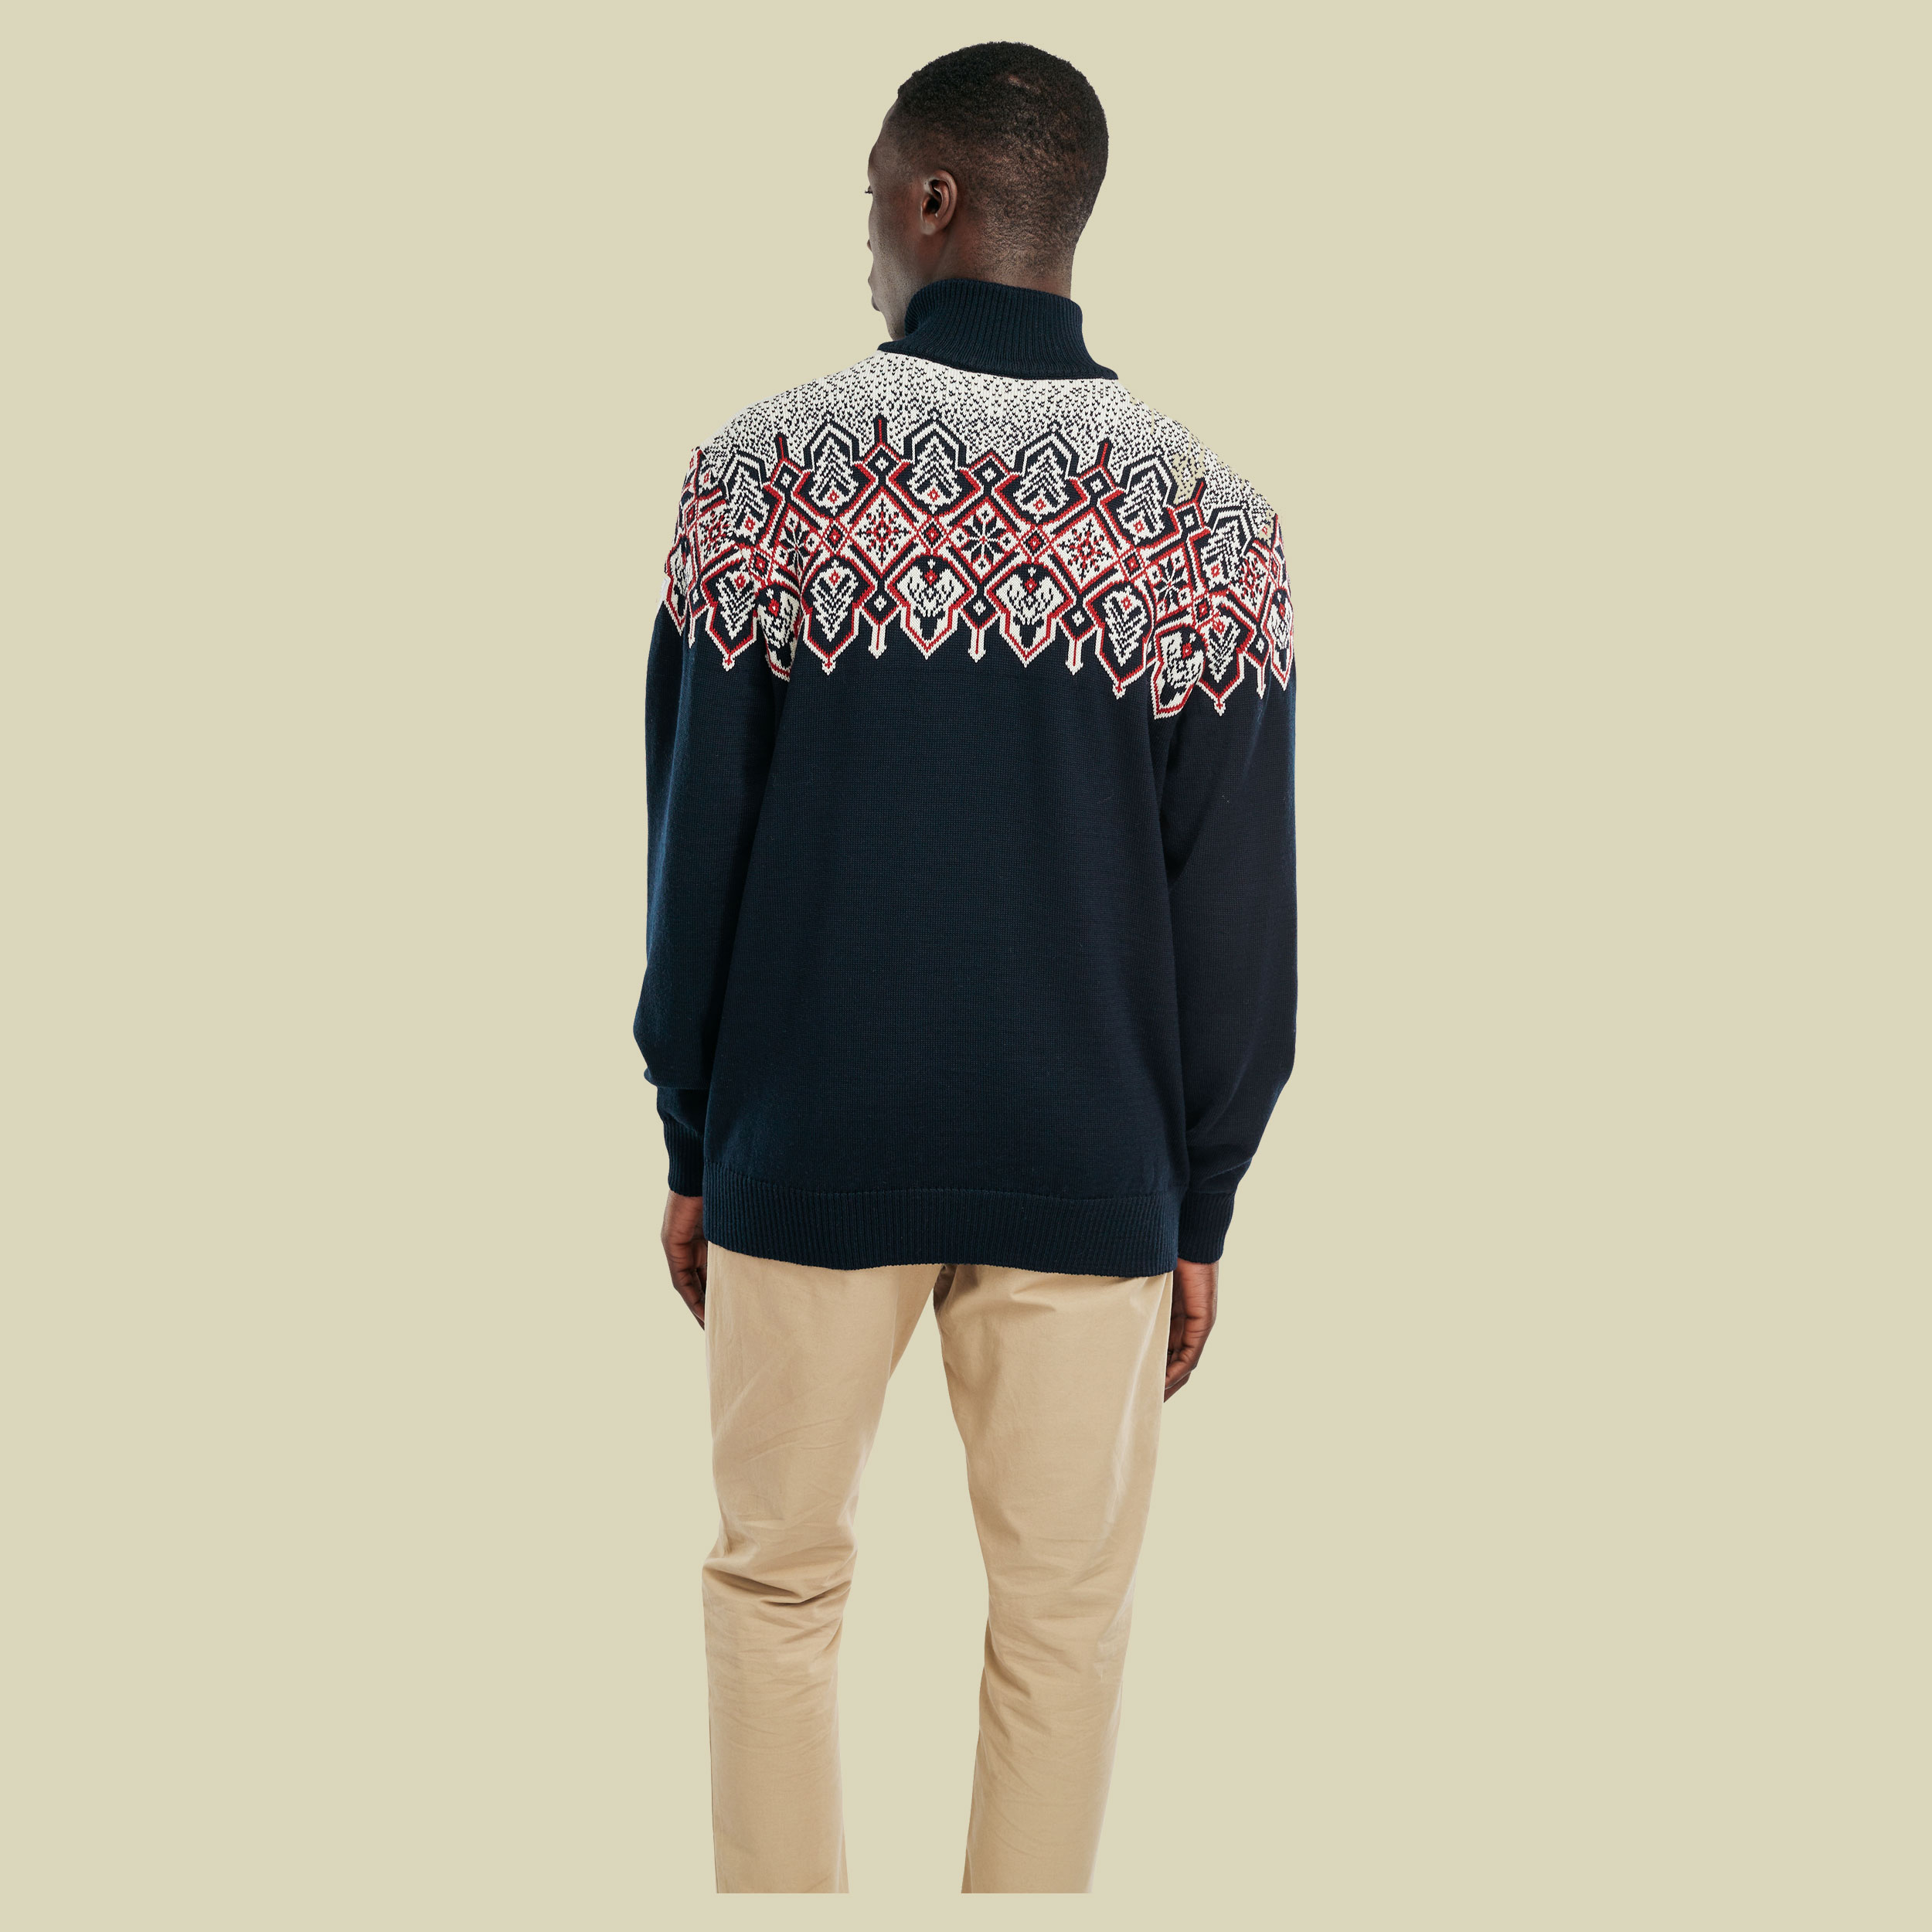 Winterland Sweater Men Größe M  Farbe navy-off white-raspberry